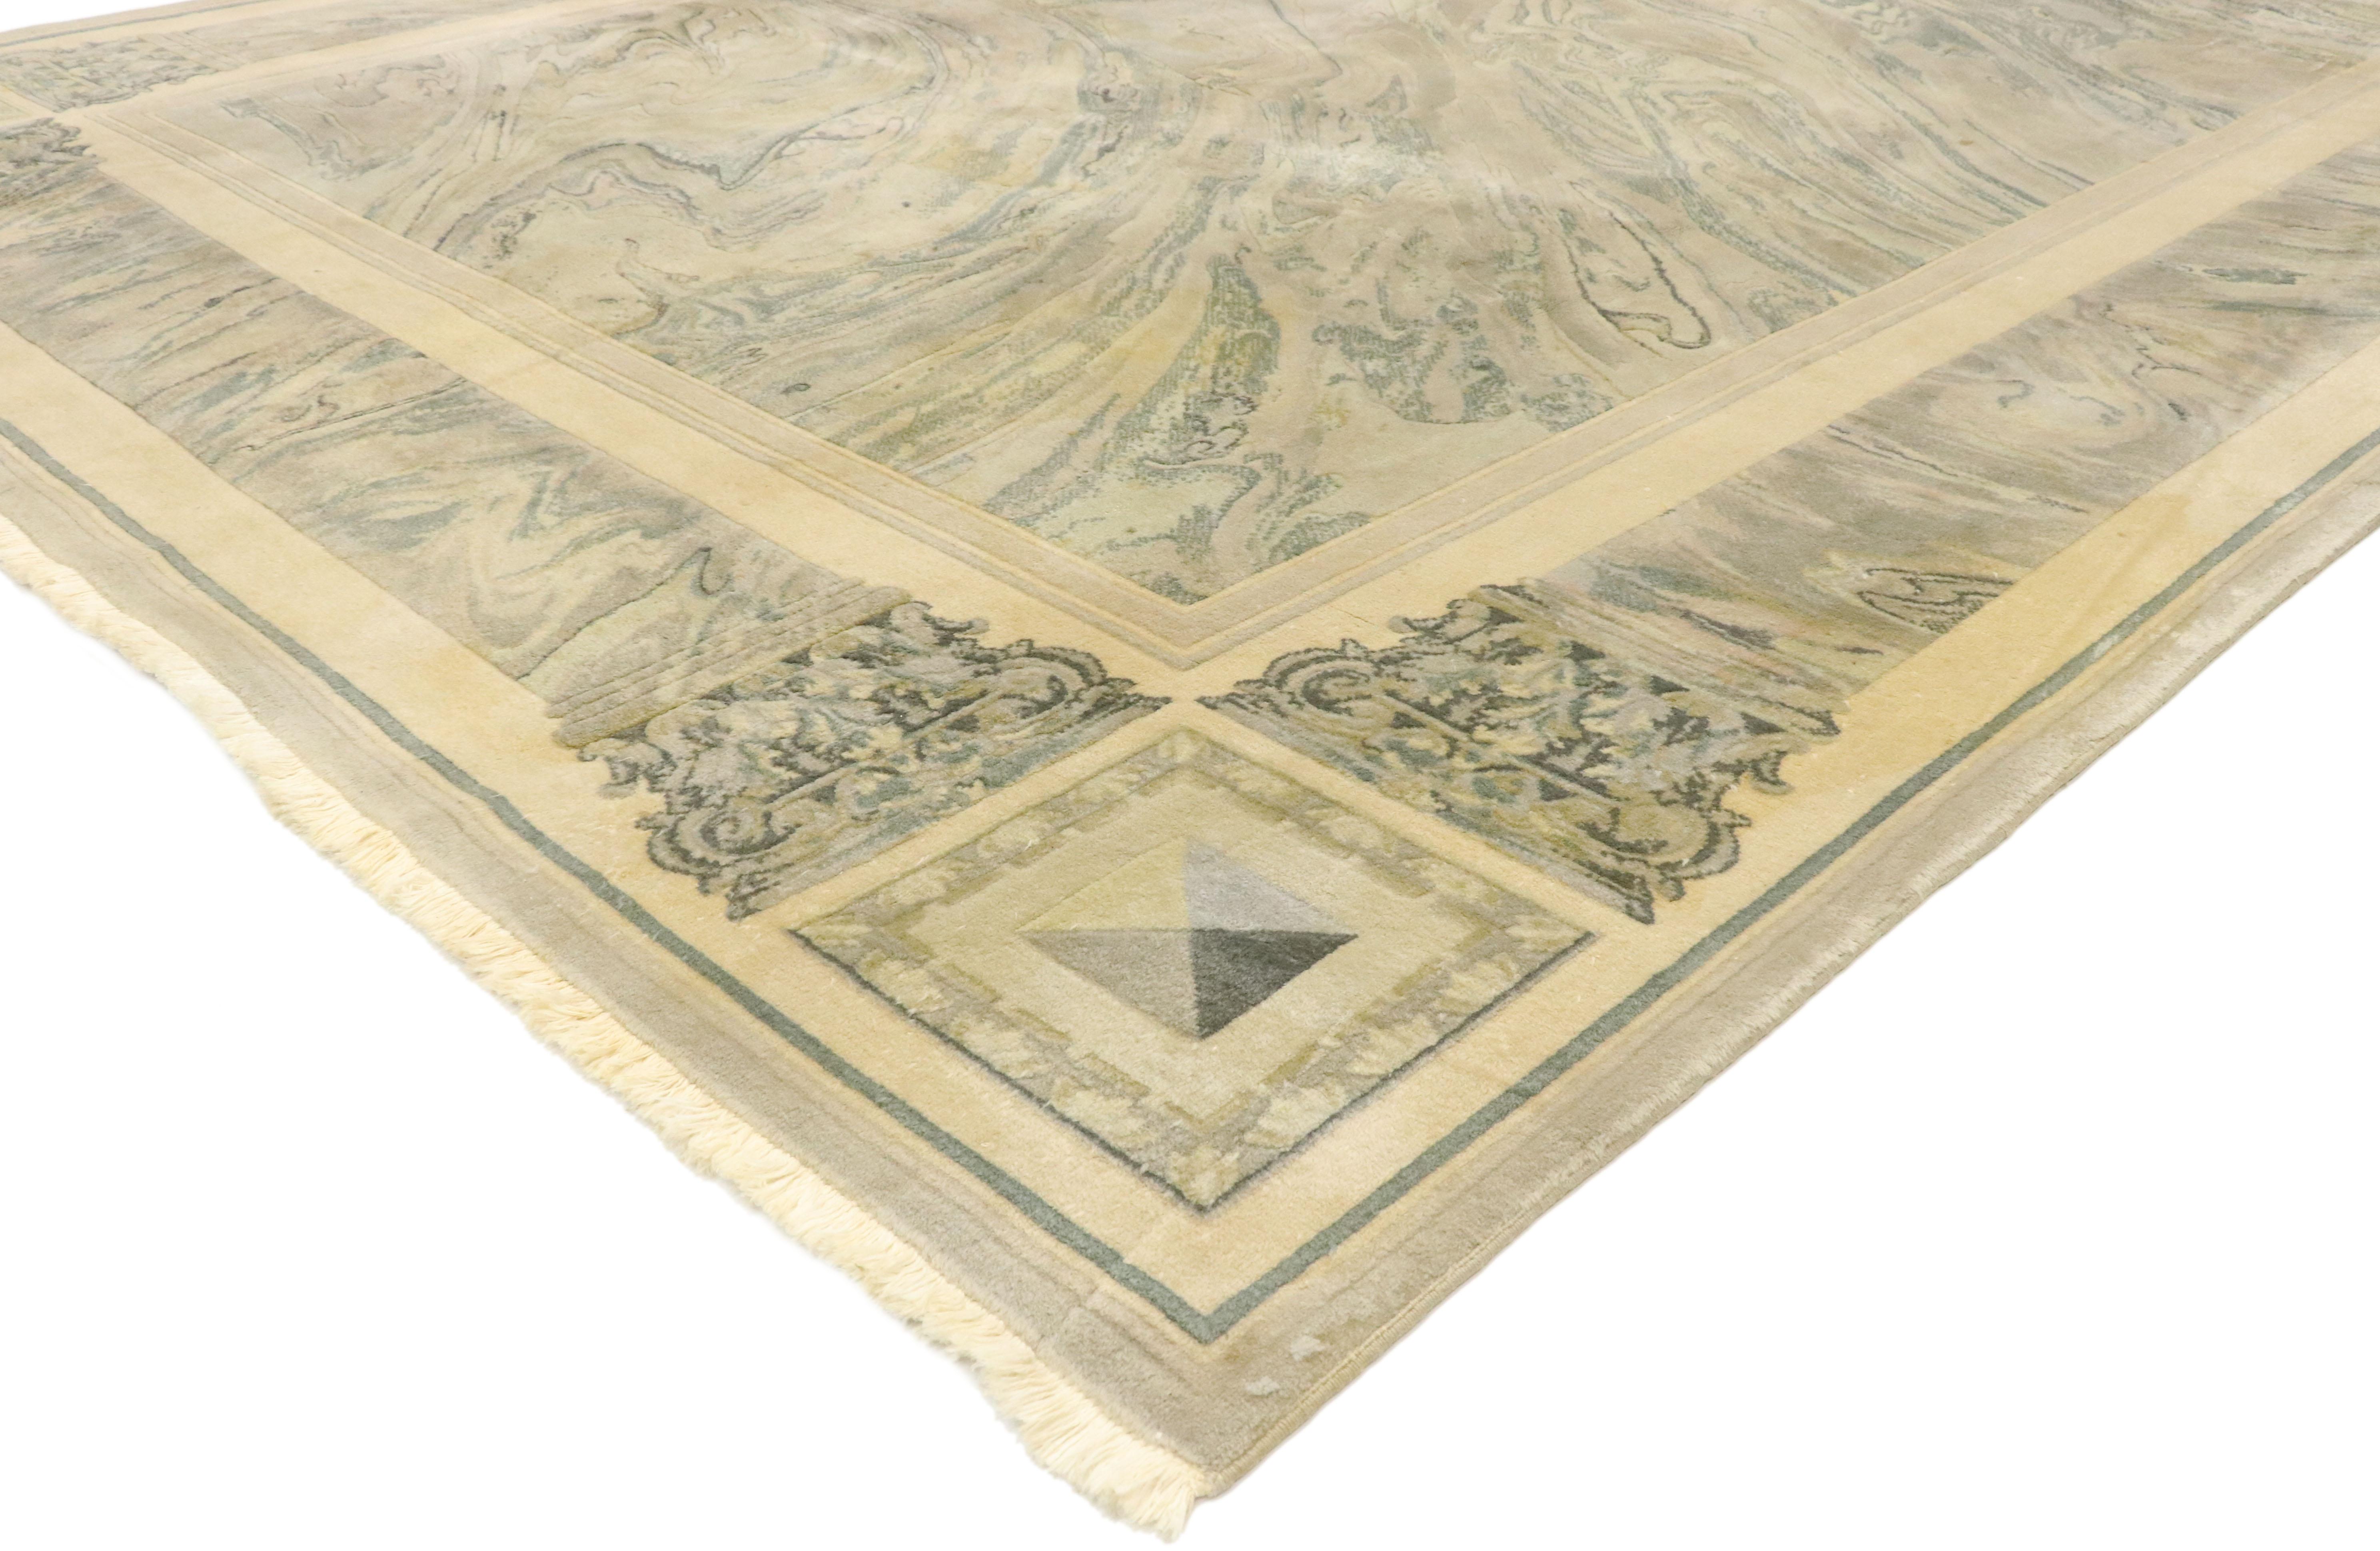 77455, tapis chinois vintage abstrait en marbre avec style baroque néoclassique moderne 08'00 x 11'04. La beauté et la simplicité sans effort se mêlent à des vibrations douces et sur mesure dans un style néoclassique moderne pour ce tapis chinois